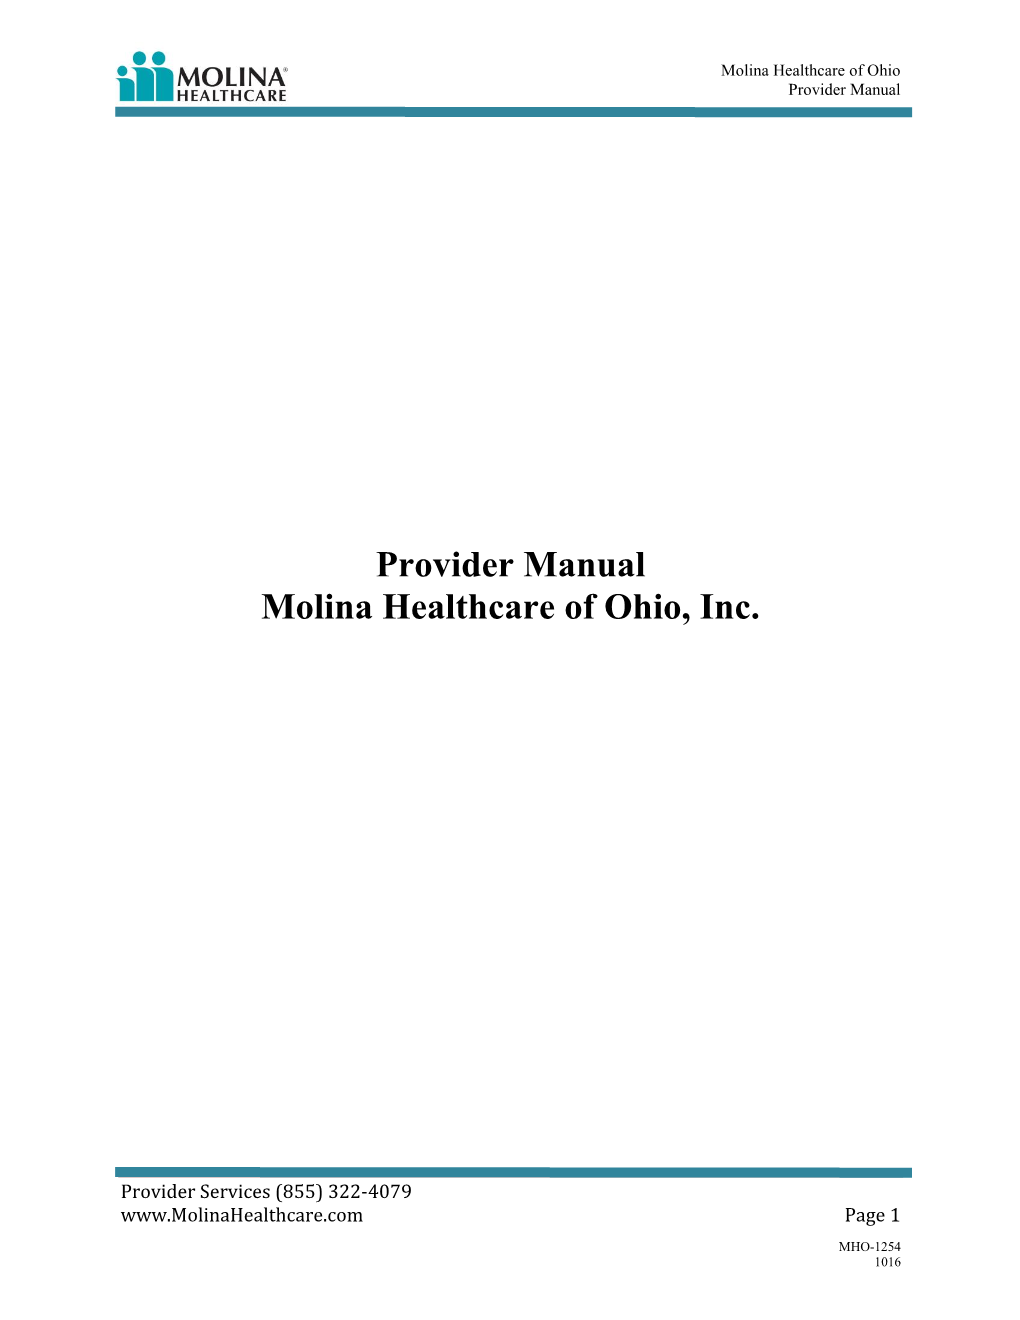 Provider Manual Molina Healthcare of Ohio, Inc